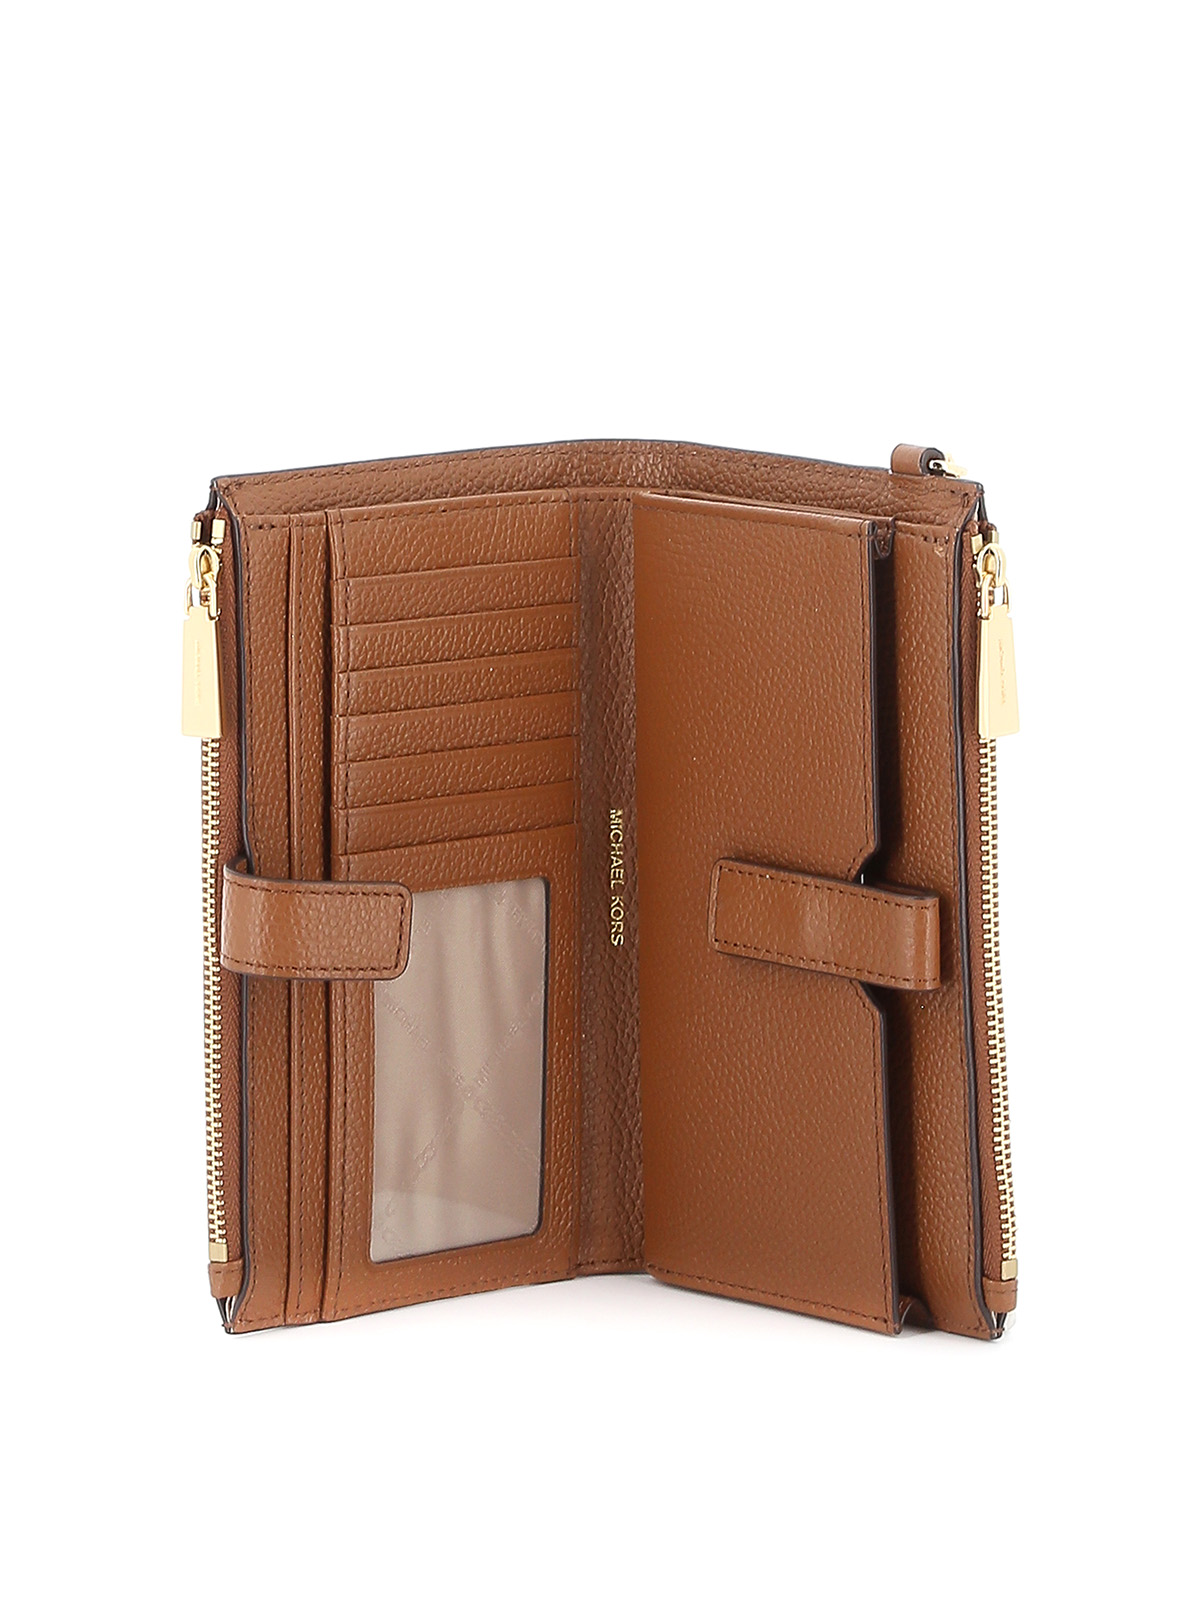 Shop Michael Kors Jet Set Leather Double Zip Wallet In Light Brown